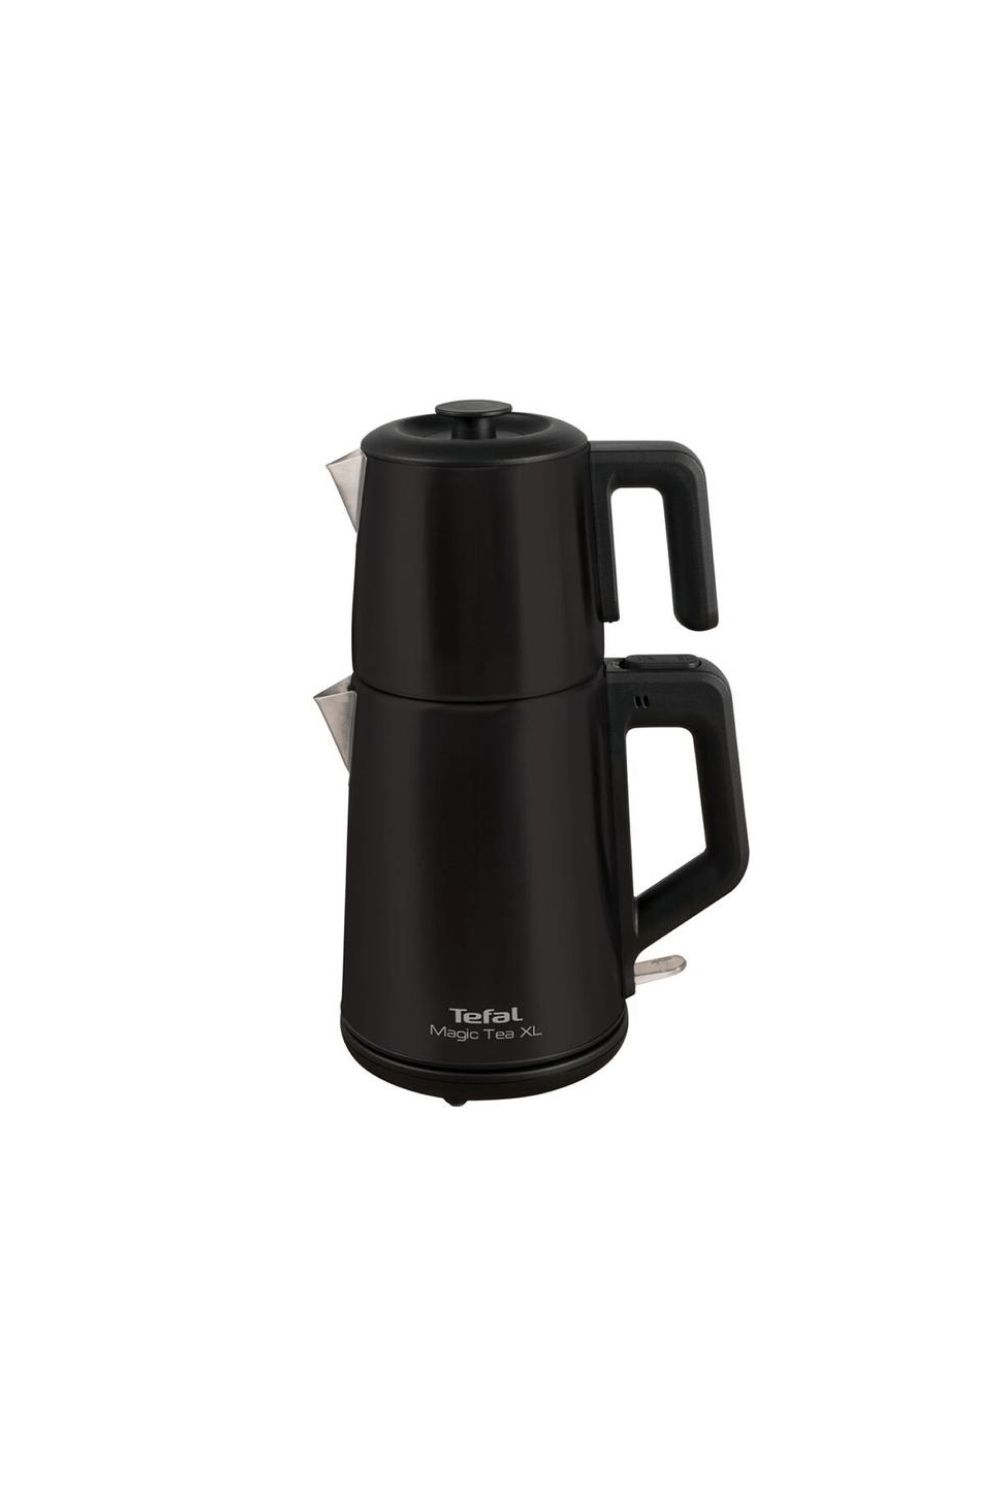 Tefal Magic Tea XL Siyah Çelik Çay Makinesi 1650W (Teşhir & Outlet)